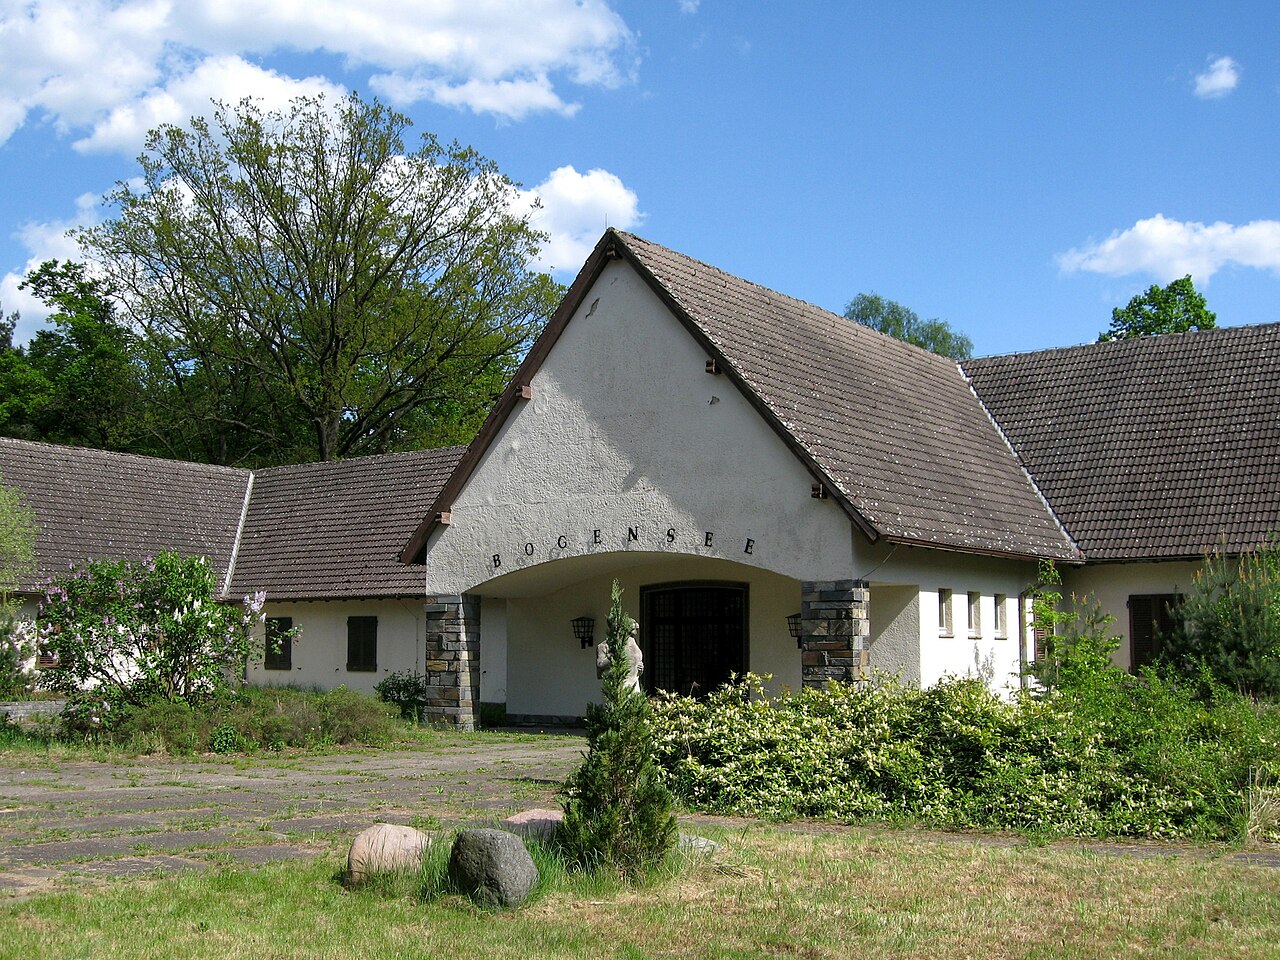 Landhaus Bogensee, ehemals Landsitz von Joseph Goebbels (Bild: Olaf Tausch, CC BY 3.0 oder GFDL, 2008)